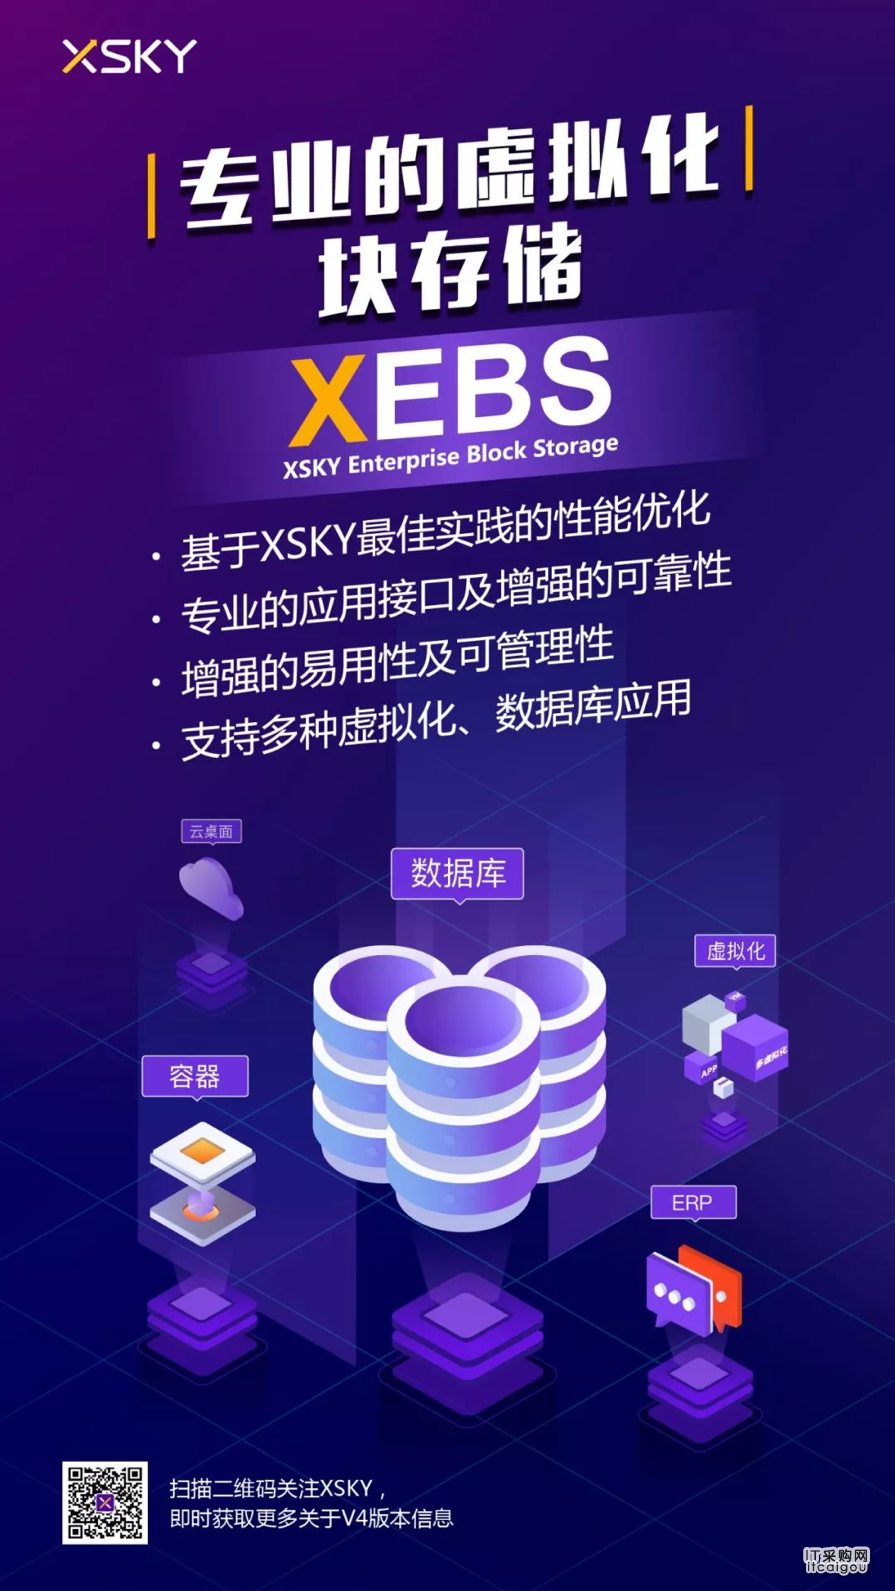 红塔集团正式上线XSKY企业级块存储XEBS